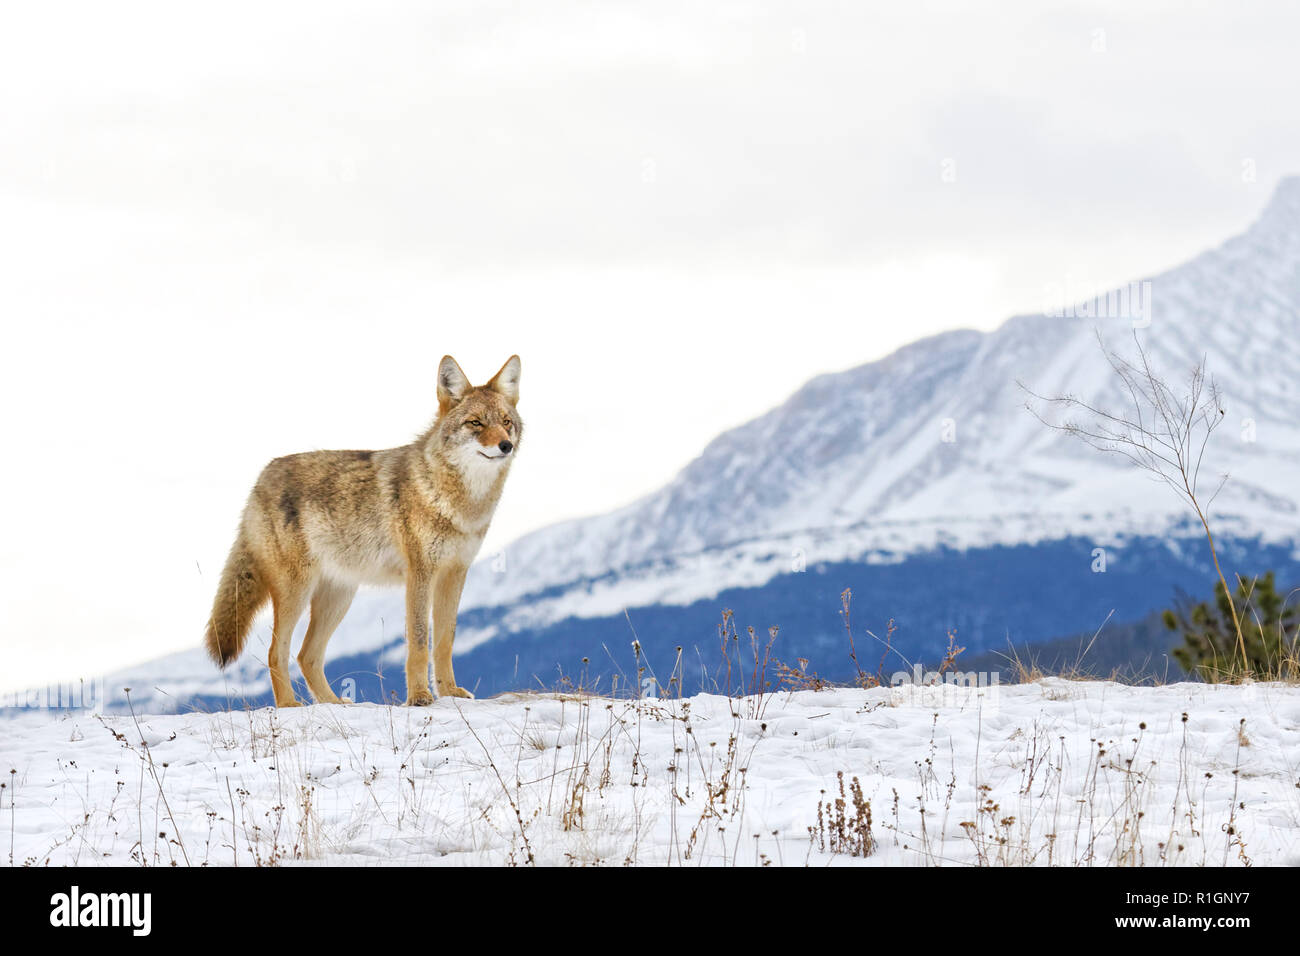 42 751,09197 Coyote alerte debout dans un paysage enneigé, la neige a couvert colline, sommet de la côte en hiver avec de grandes montagnes en arrière-plan lointain Banque D'Images